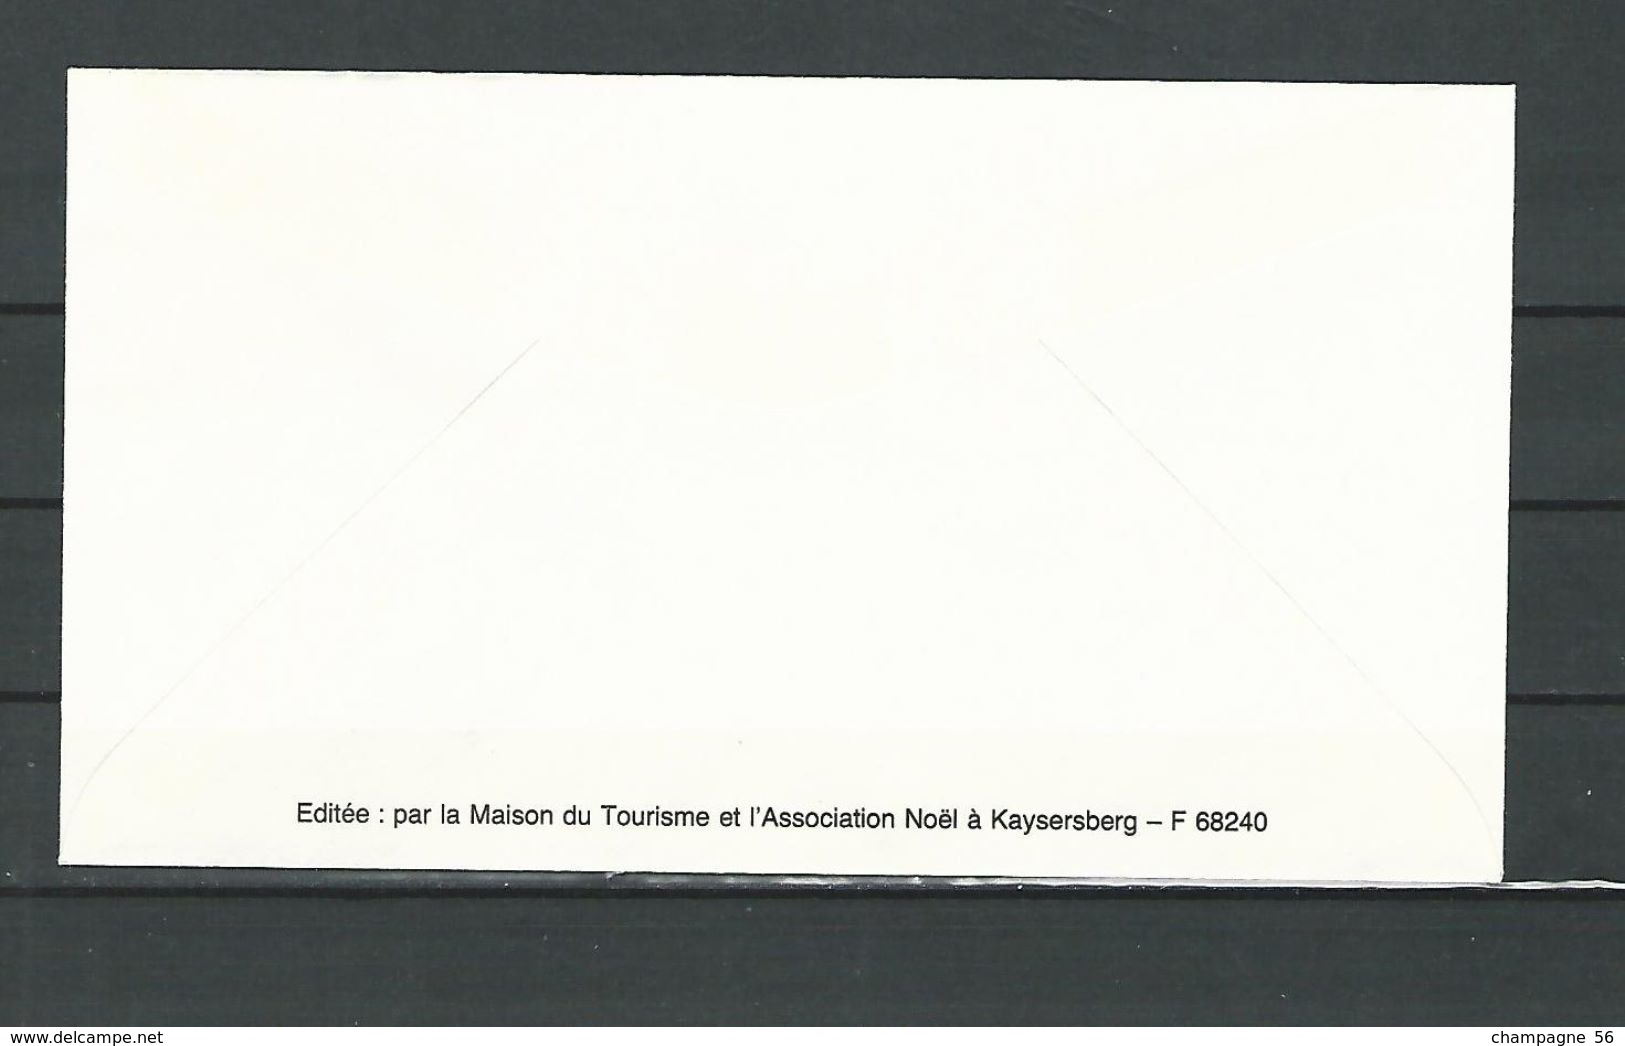 VARIÉTÉS FRANCE ALSACE Noël à KAYSERSBERG 6 enveloppe 1991 /1992 /1993  /1994 /1995 /1996 /  noël oblitérés